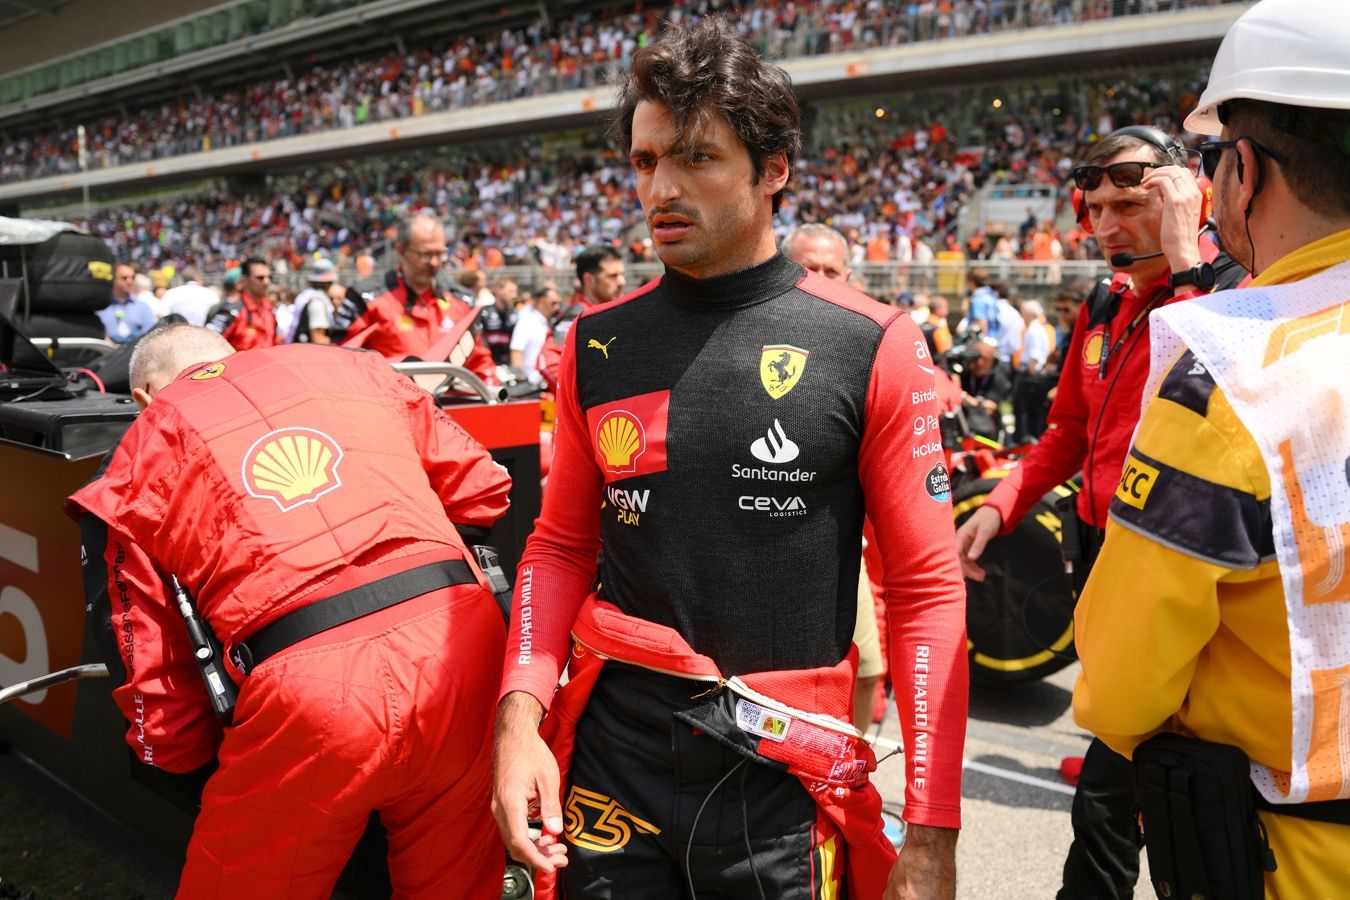 Карлос Сайнс извинился за инцидент с Леклером в спринте Гран-при Китая